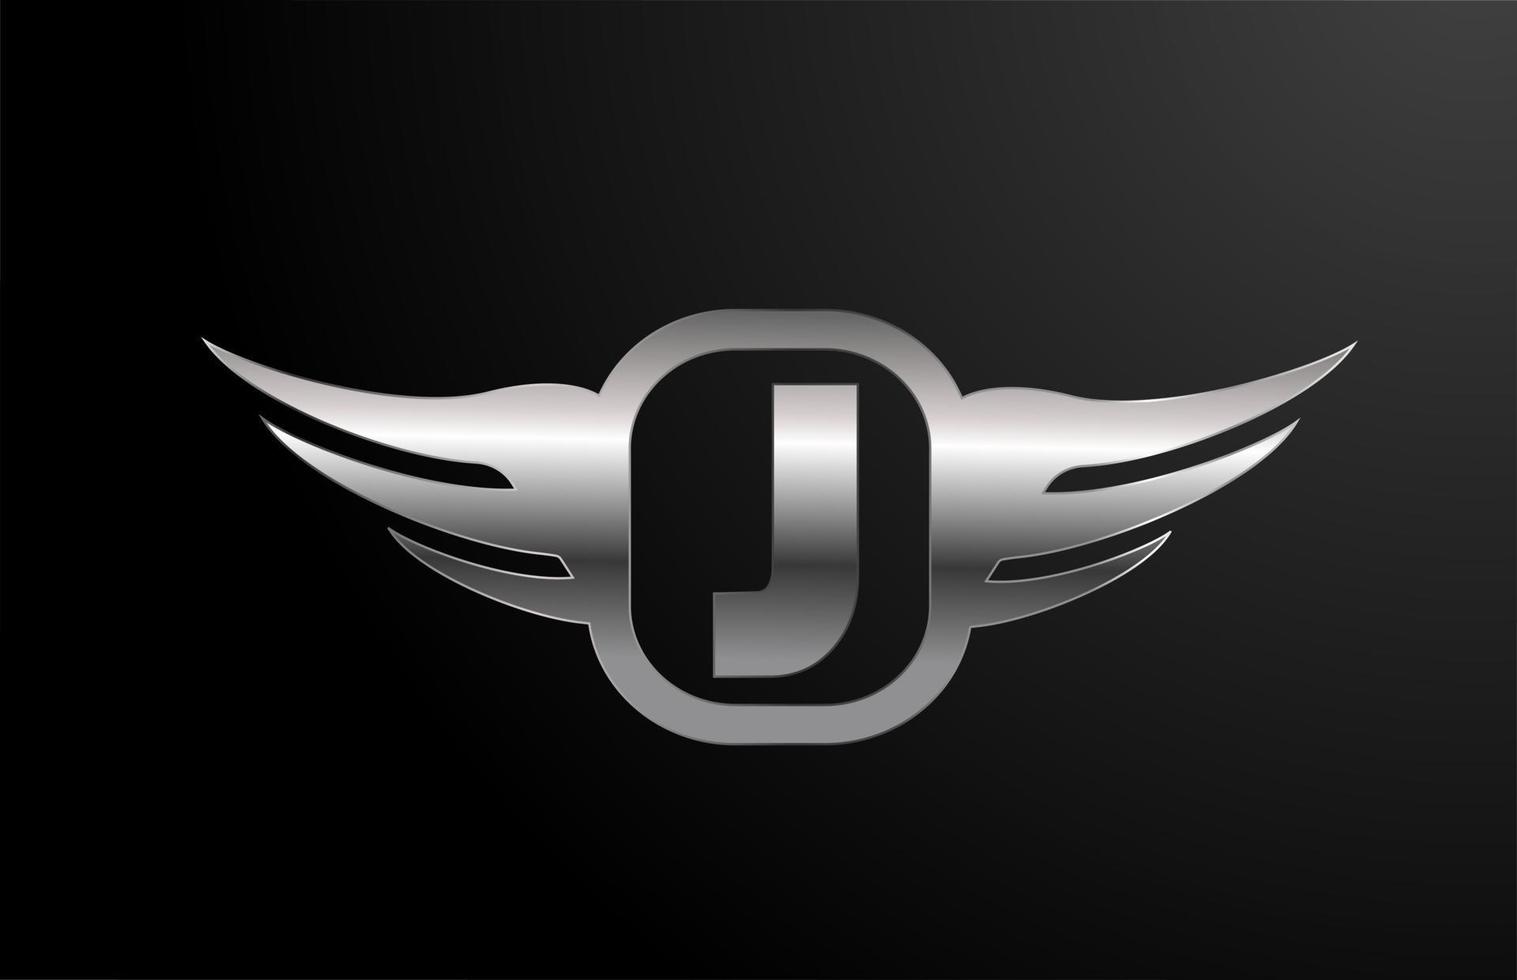 j Buchstaben-Logo-Alphabet für Unternehmen und Unternehmen mit Flügeln und silberner Farbe. Corporate-Schriftzug und -Branding mit Metall-Design-Ikone vektor